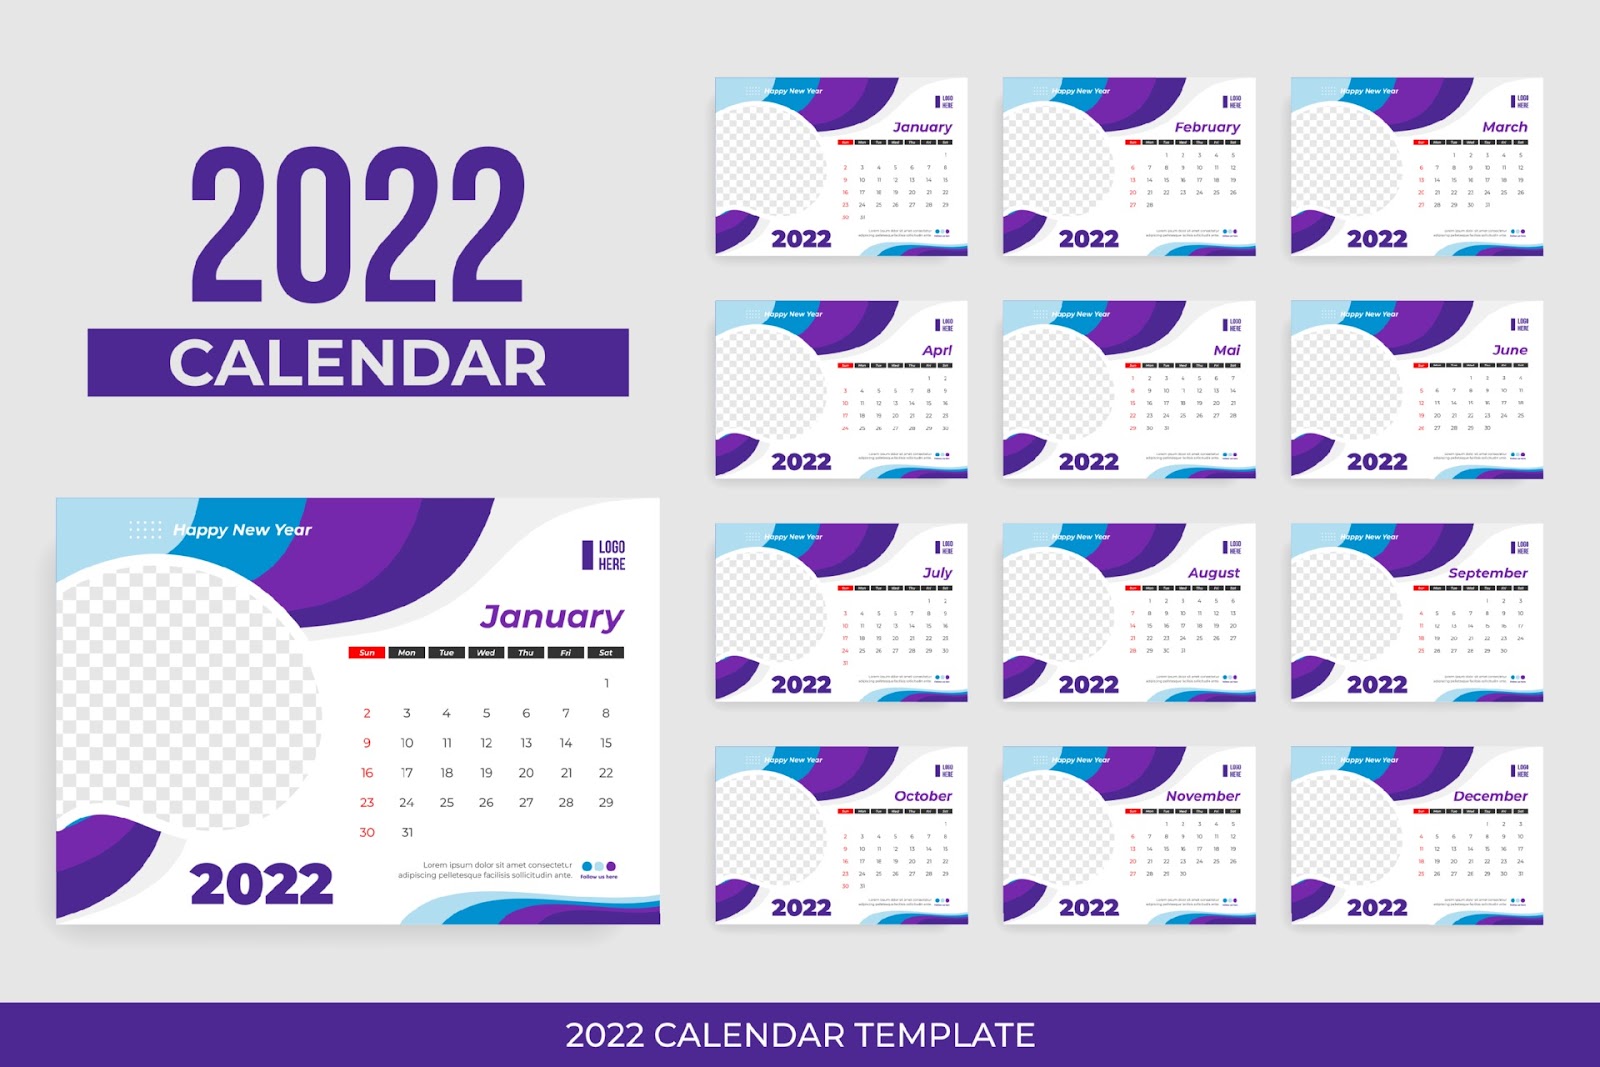 Tải về 20 file thiết kế lịch để bàn năm 2022 (Ai)